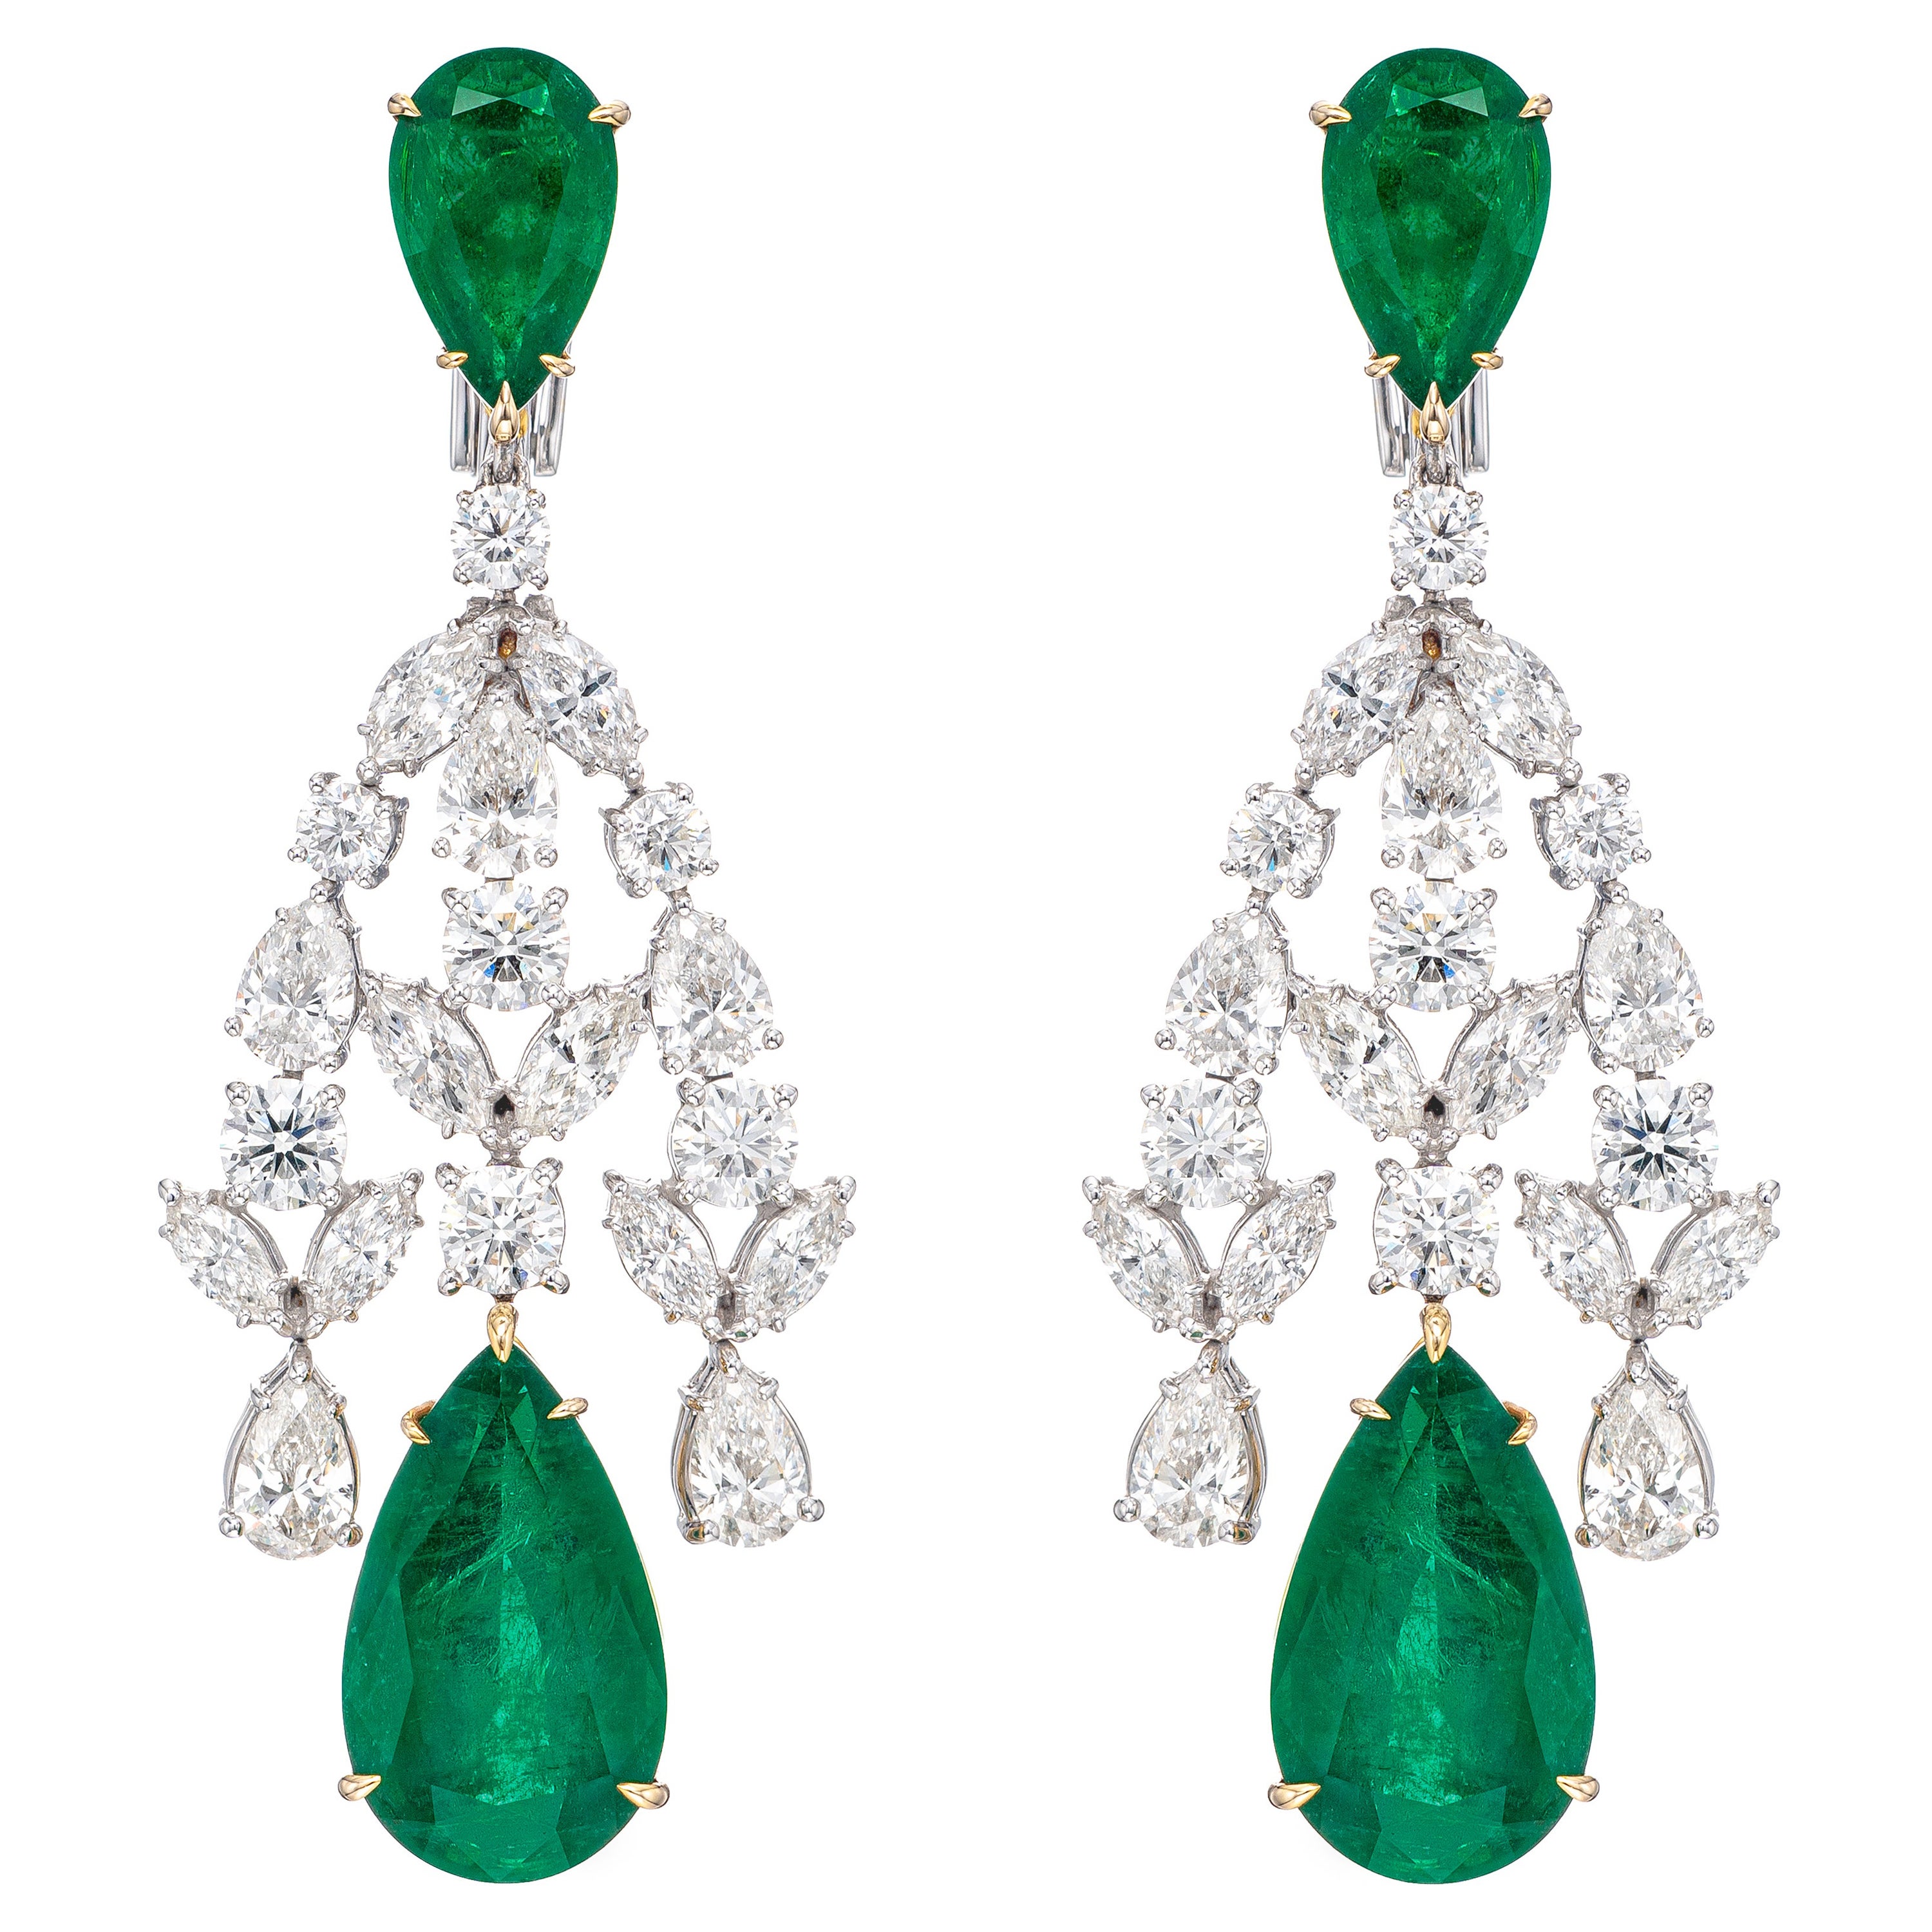 Boucles d'oreilles chandelier en or 18 carats avec diamants et émeraude de Zambie certifiée GRS de 47,42 carats